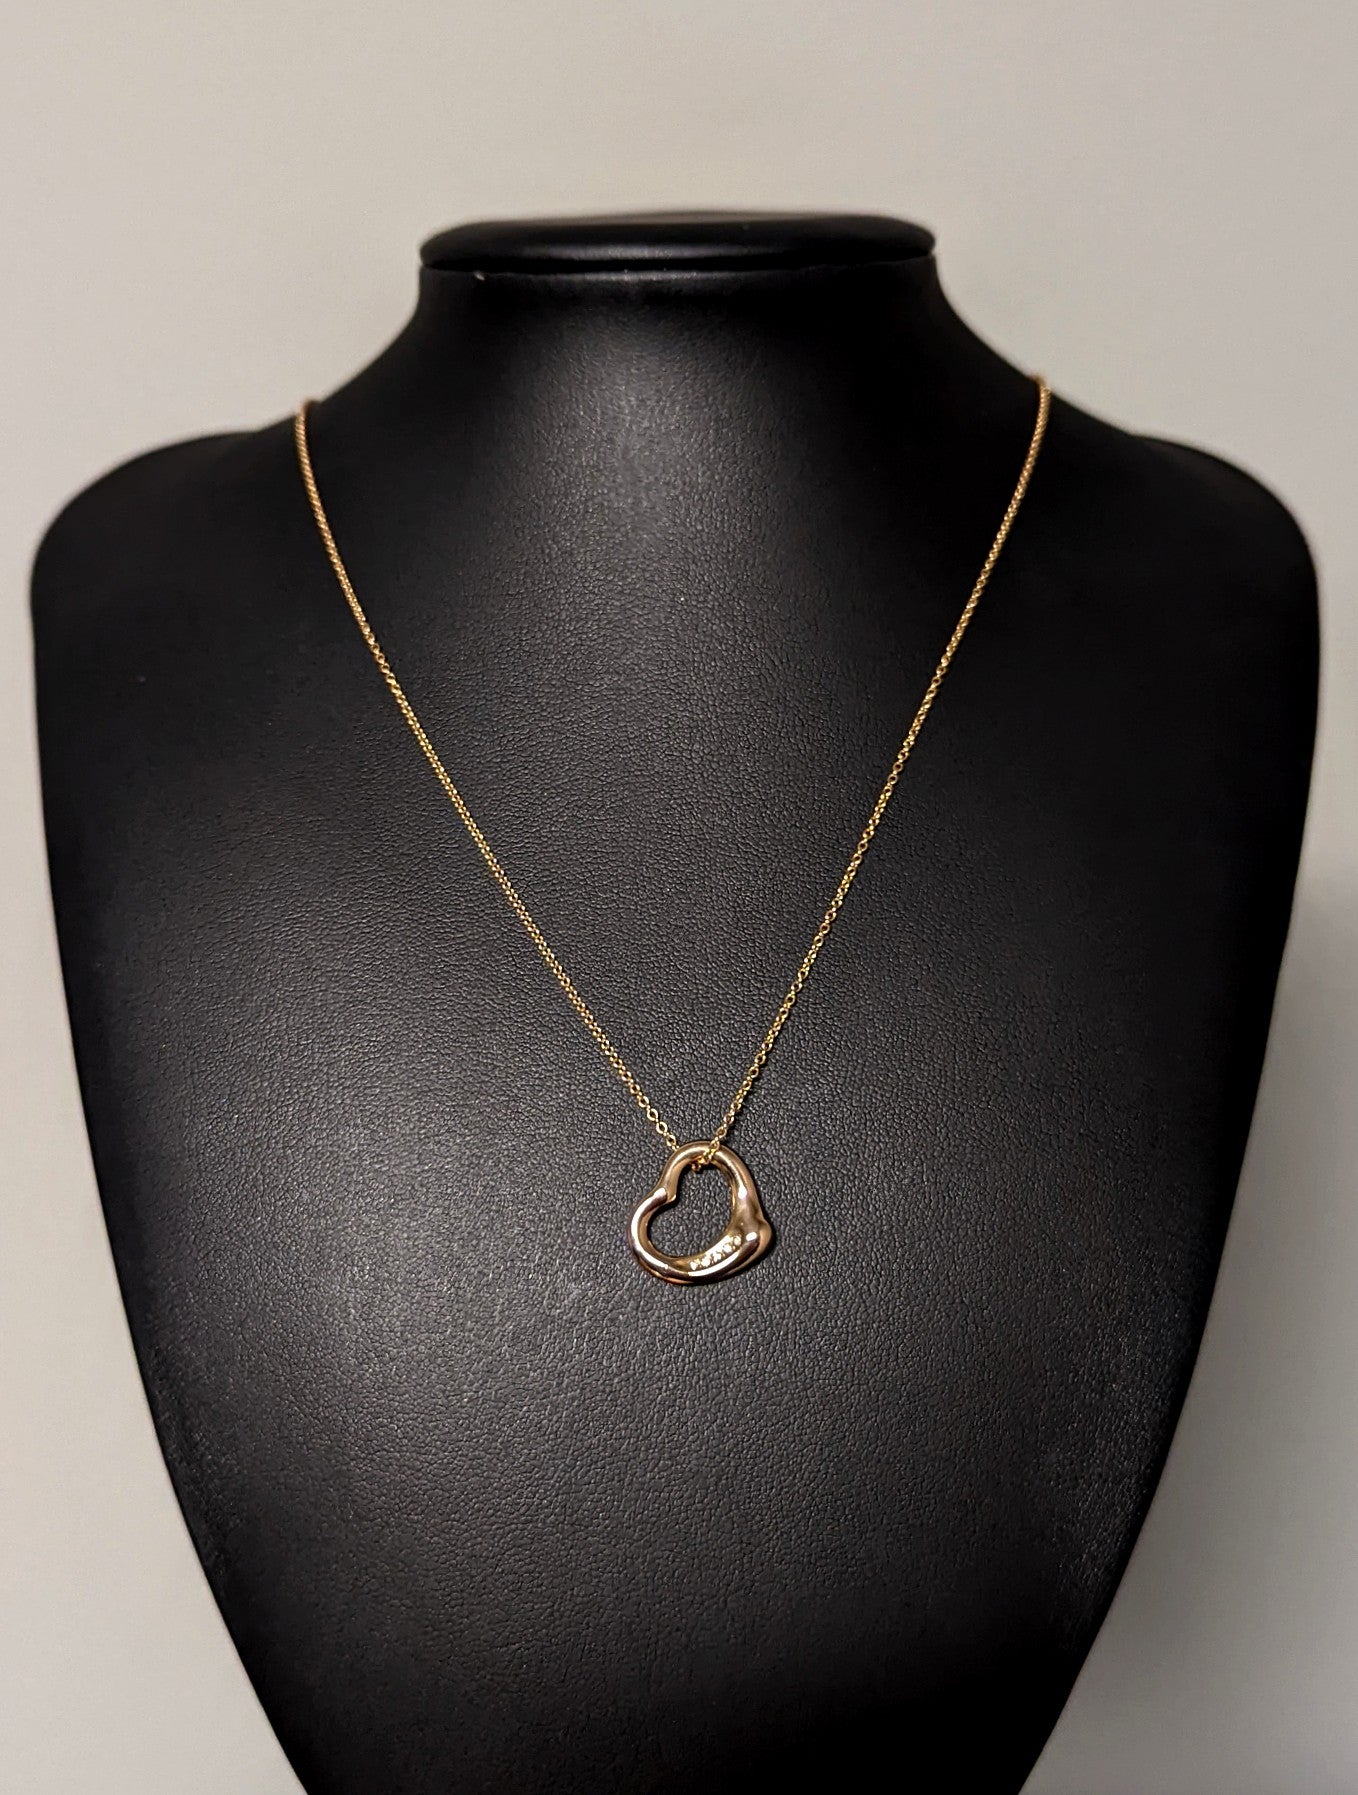 Tiffany & Co. Elsa Peretti 5 Open Heart Pendant Necklace Silver925 16